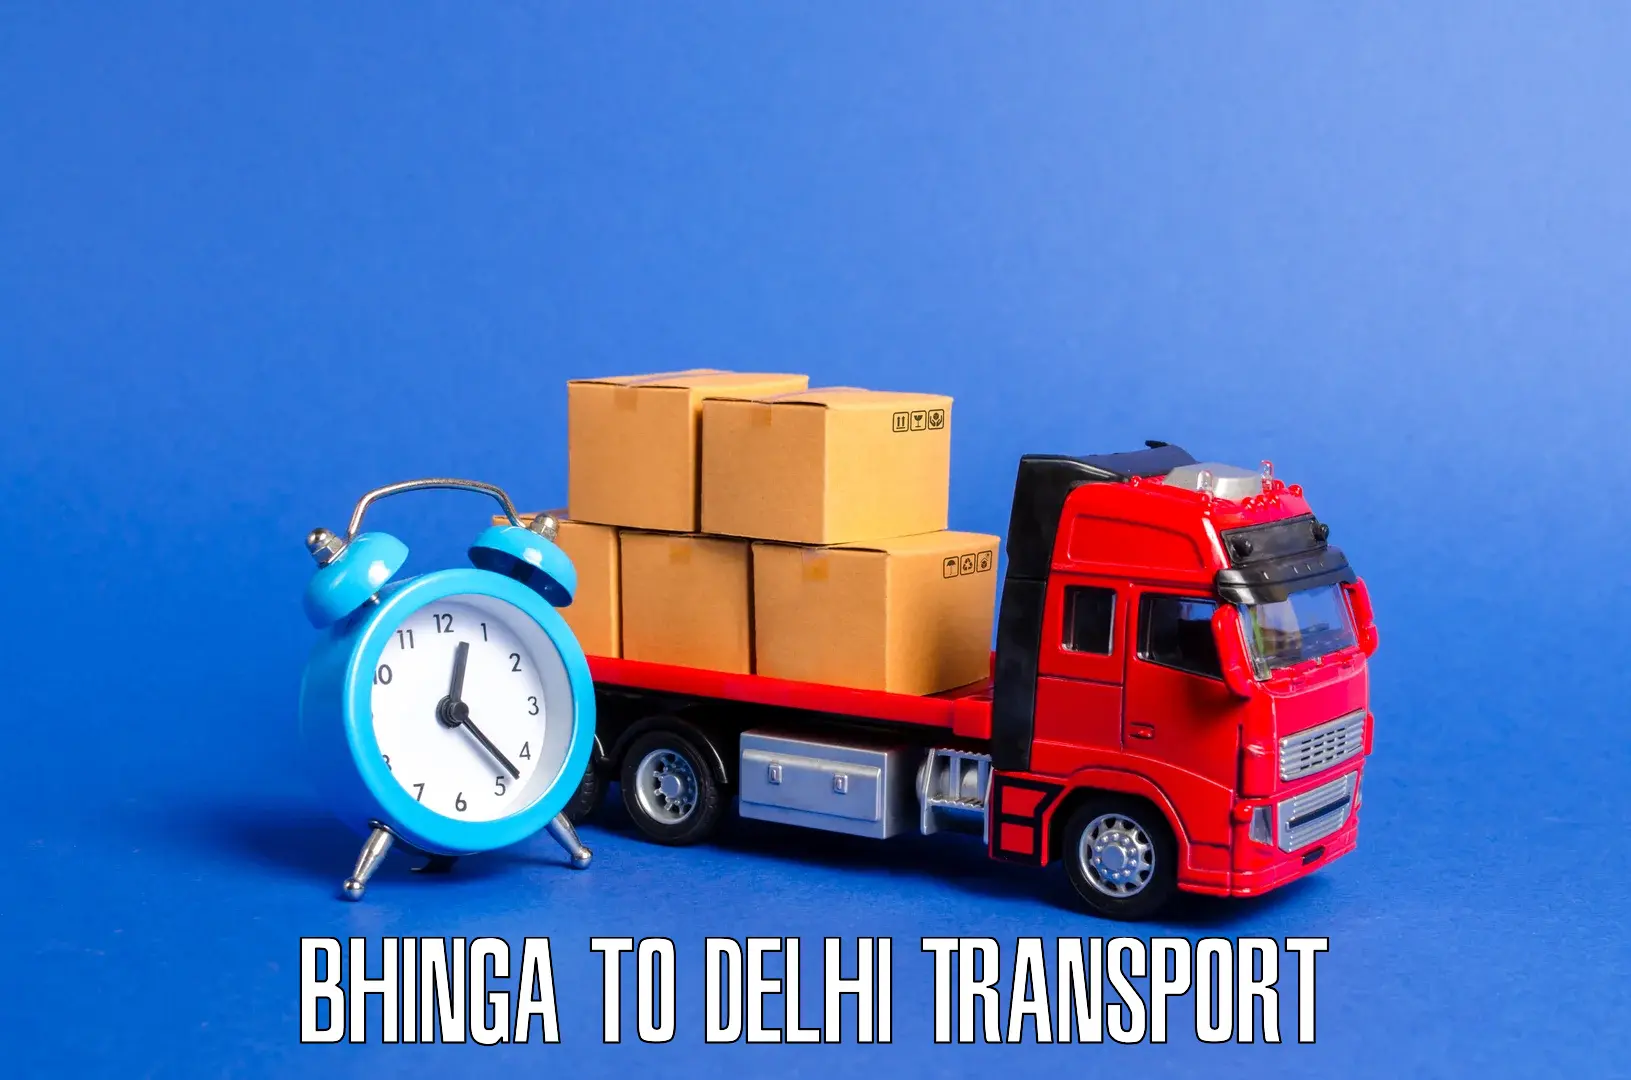 Pick up transport service Bhinga to Lodhi Road